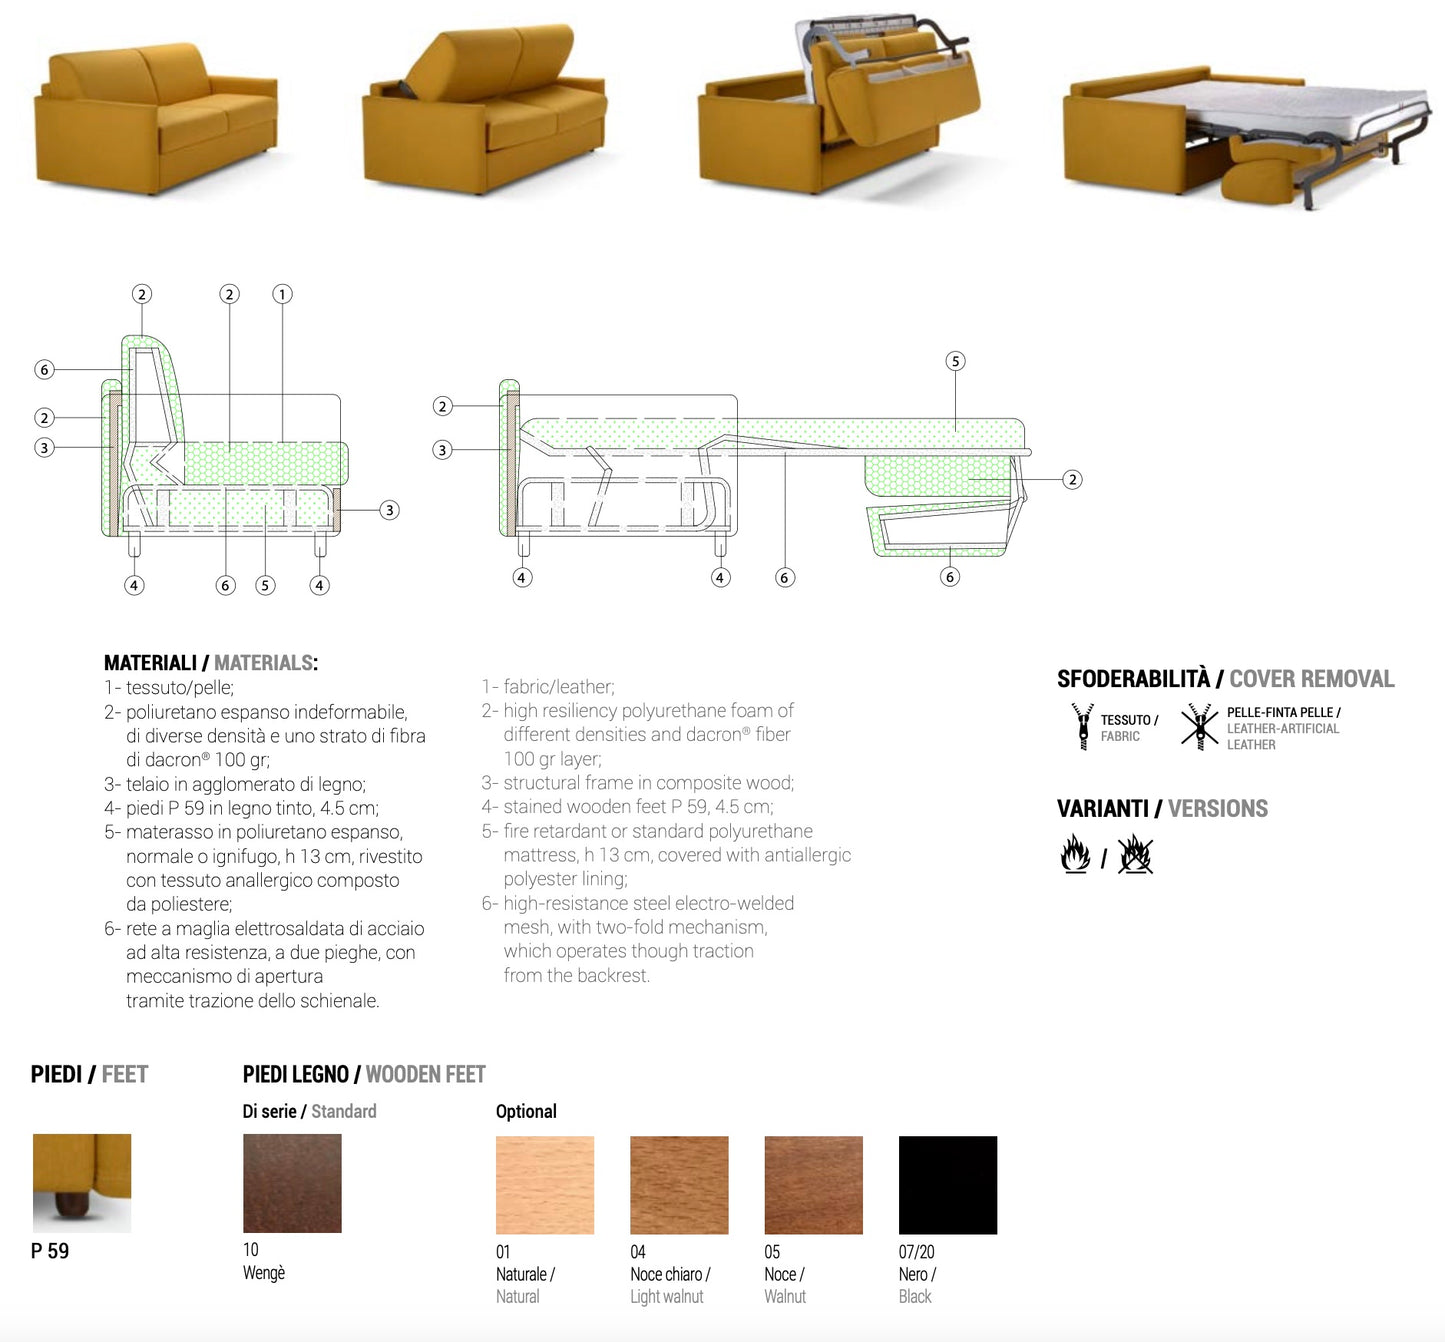 Pegaso 2-Seater Sofa Bed by Domingo Salotti